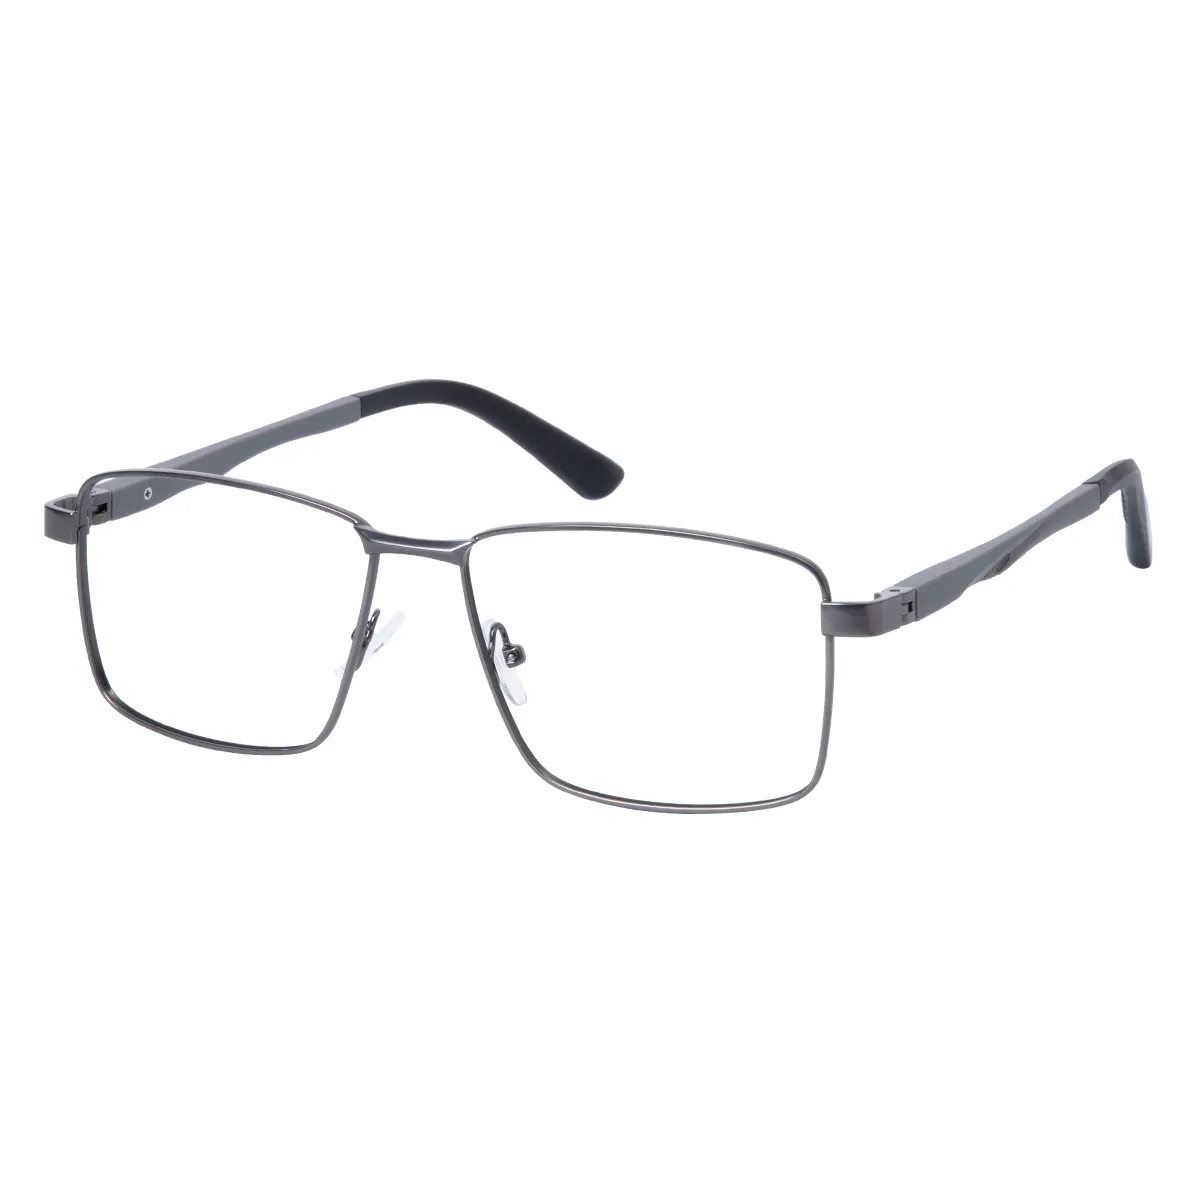 Merrick - Rectangle Gray Glasses for Men